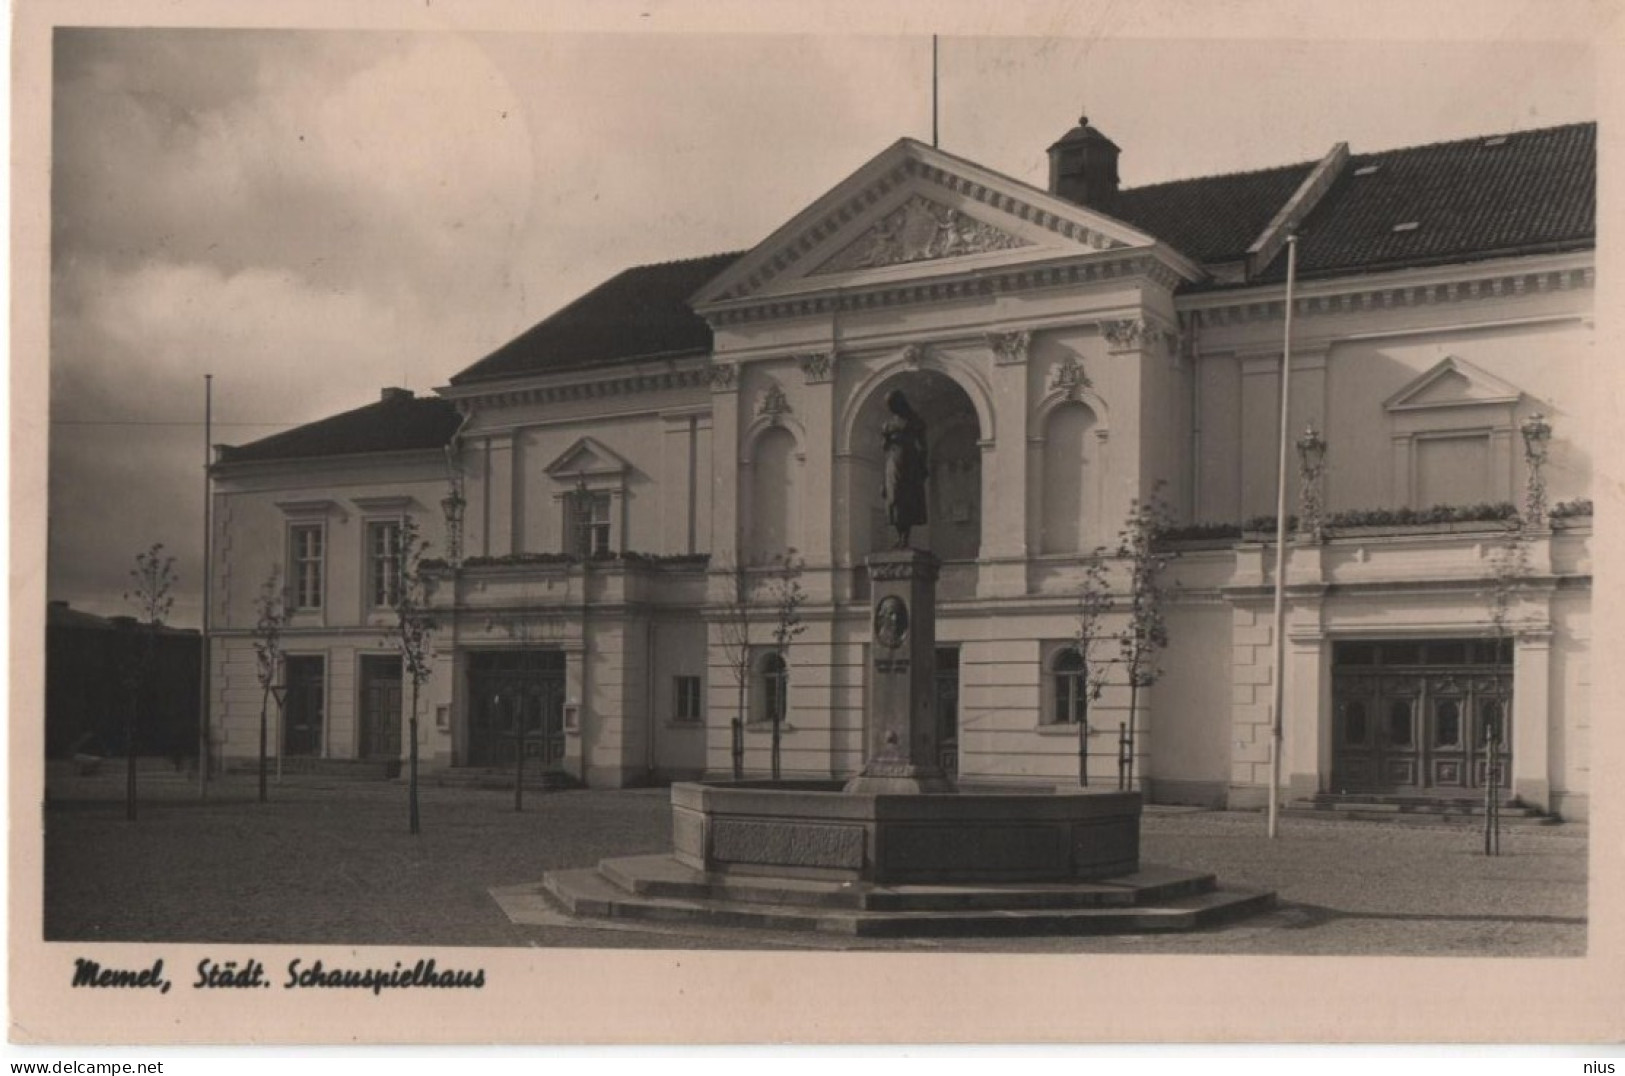 Lithuania Lietuva Germany Deutschland 1915 Memel Klaipeda, Schauspielhaus Theater Theatre Teatro - Lituanie